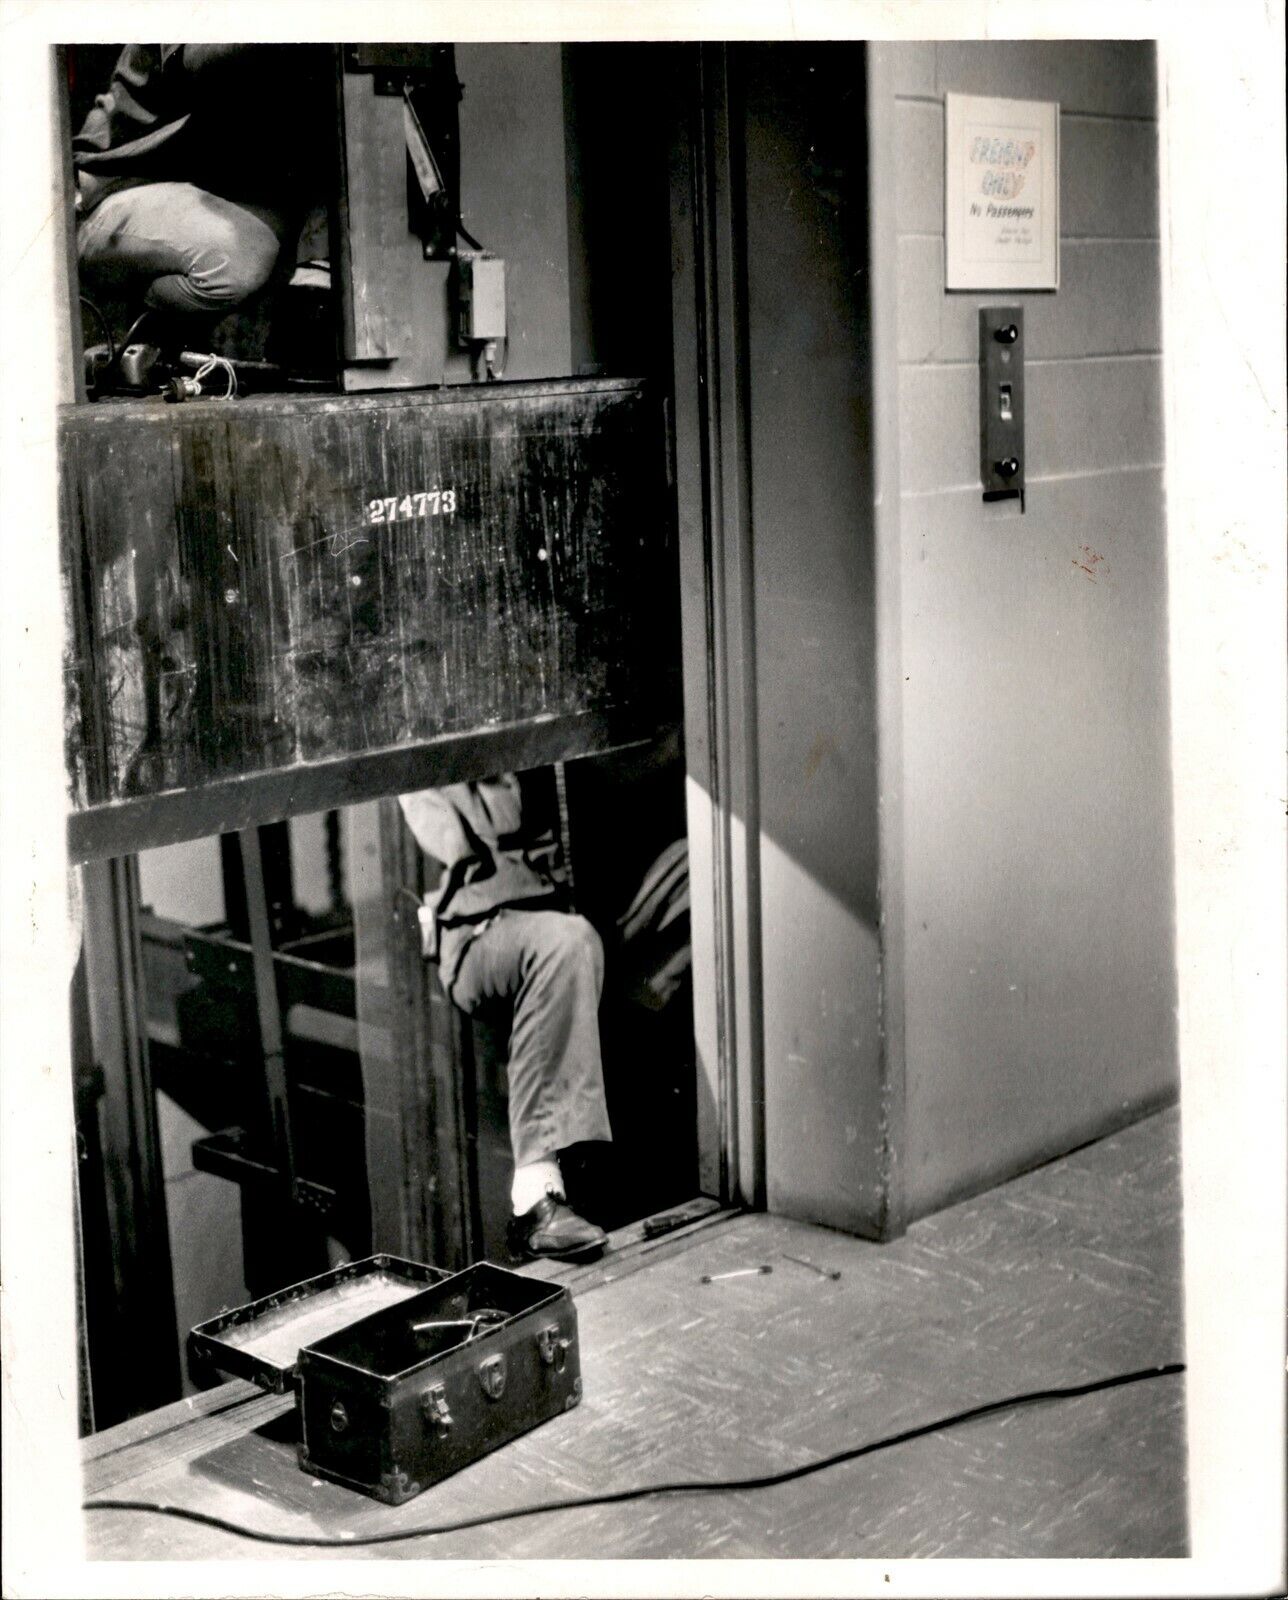 LG898 1975 Orig Tom McCarthy Photo ELEVATOR MAINTENANCE Workers in Shaft Tools